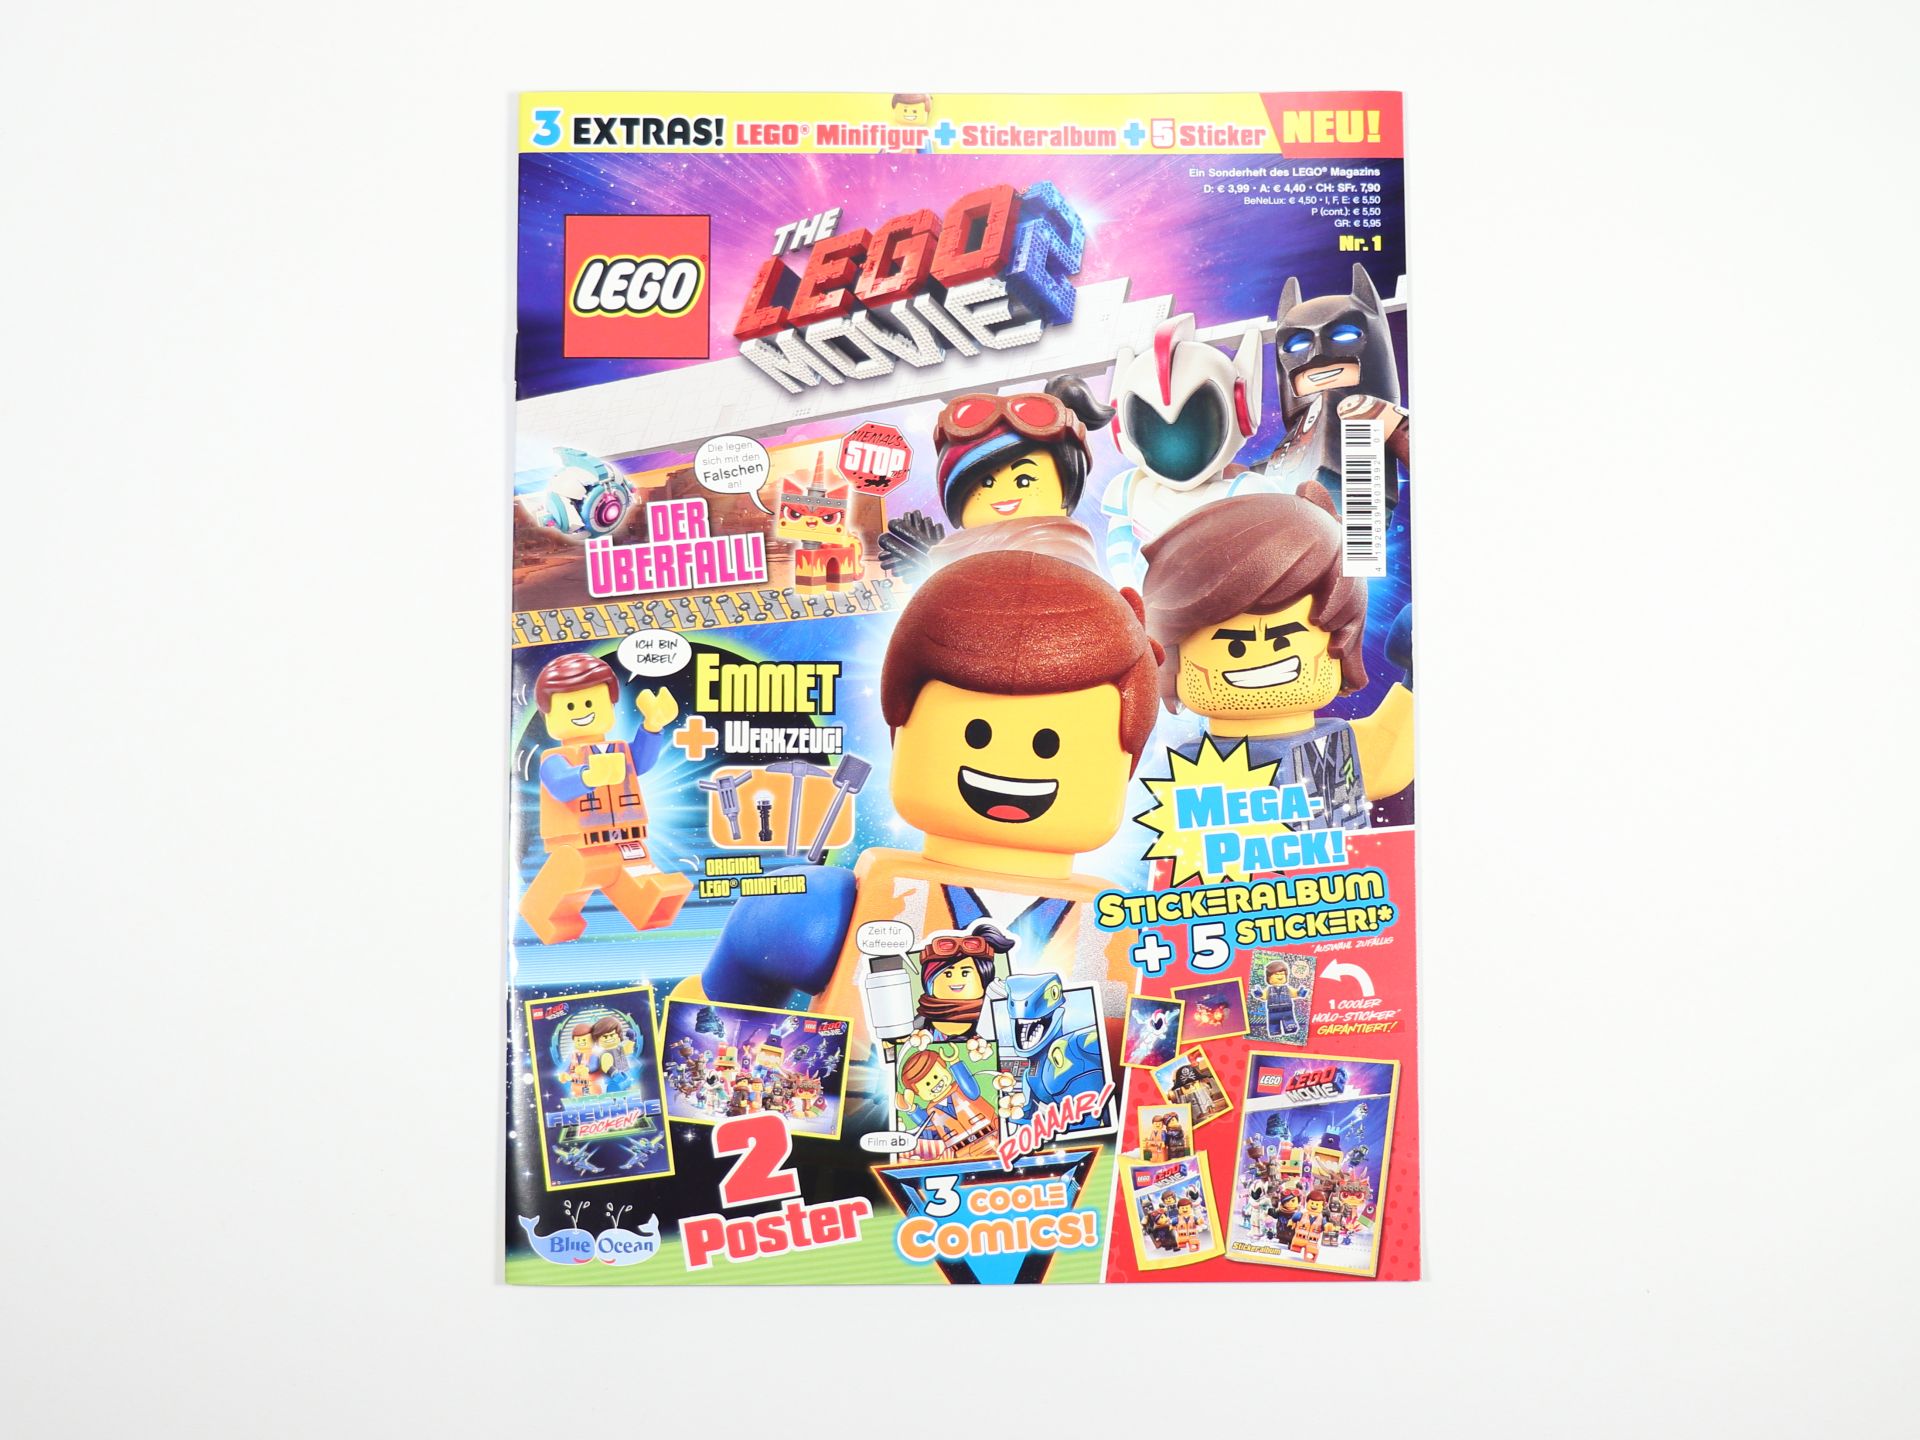 The LEGO Movie 2 Sammel-Sticker 10 Booster Tüten Blue Ocean deutsche Ausgabe 